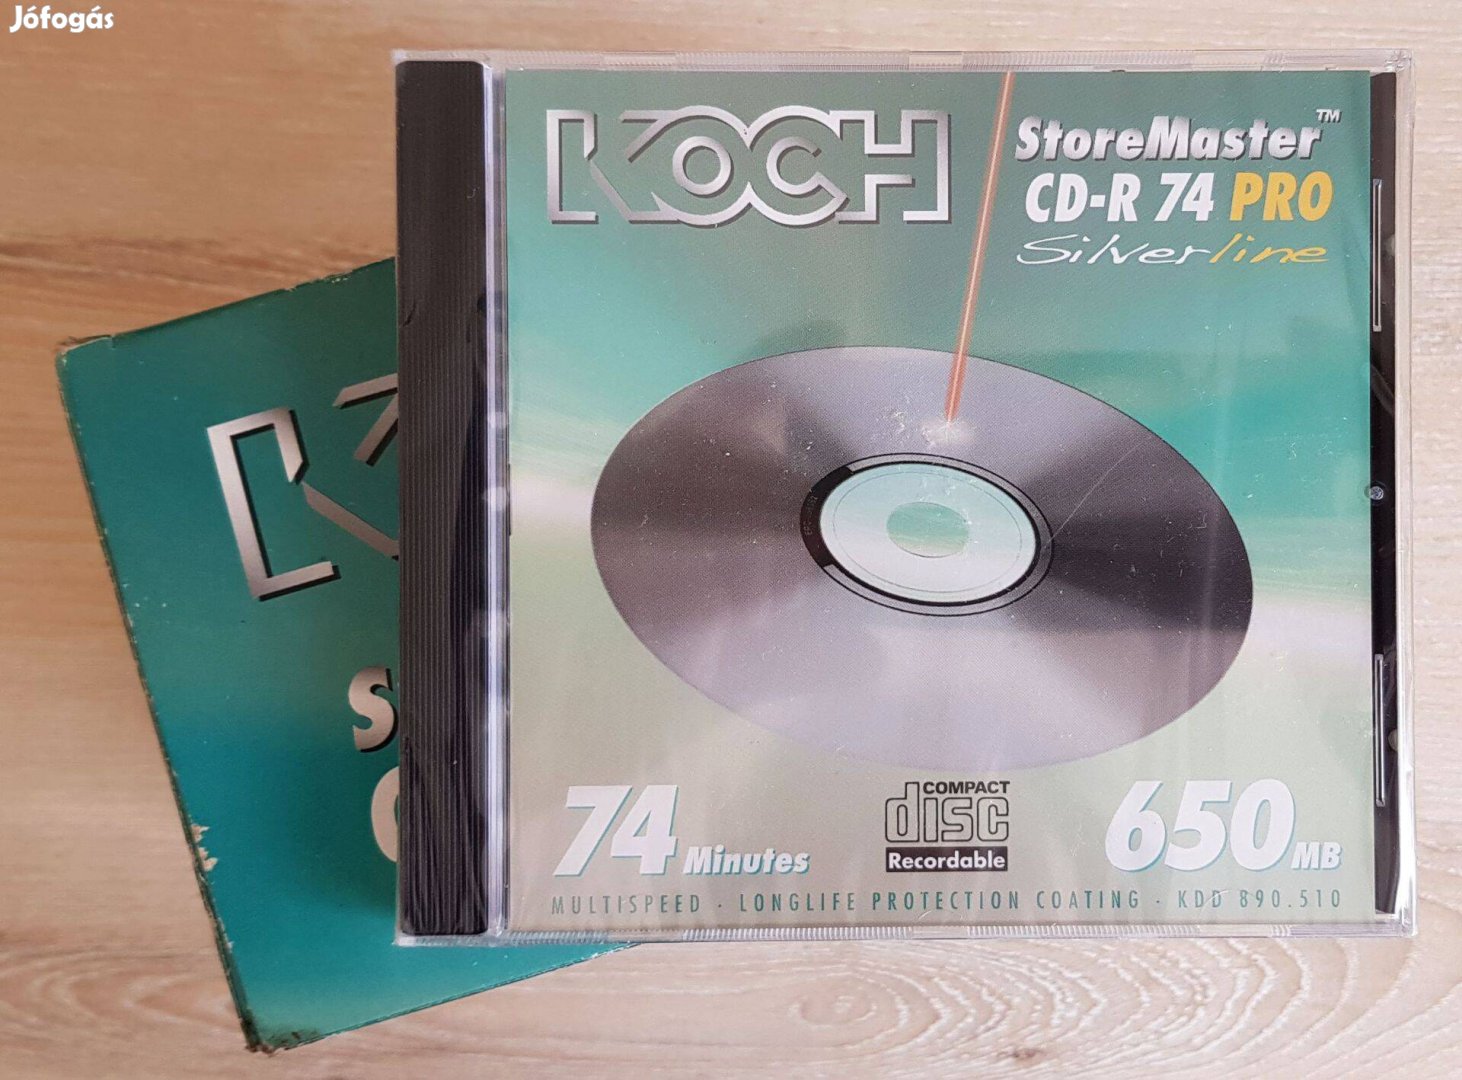 Koch Storemaster CD-R 74 Pro "Silverline" CD-k ( 10 db )